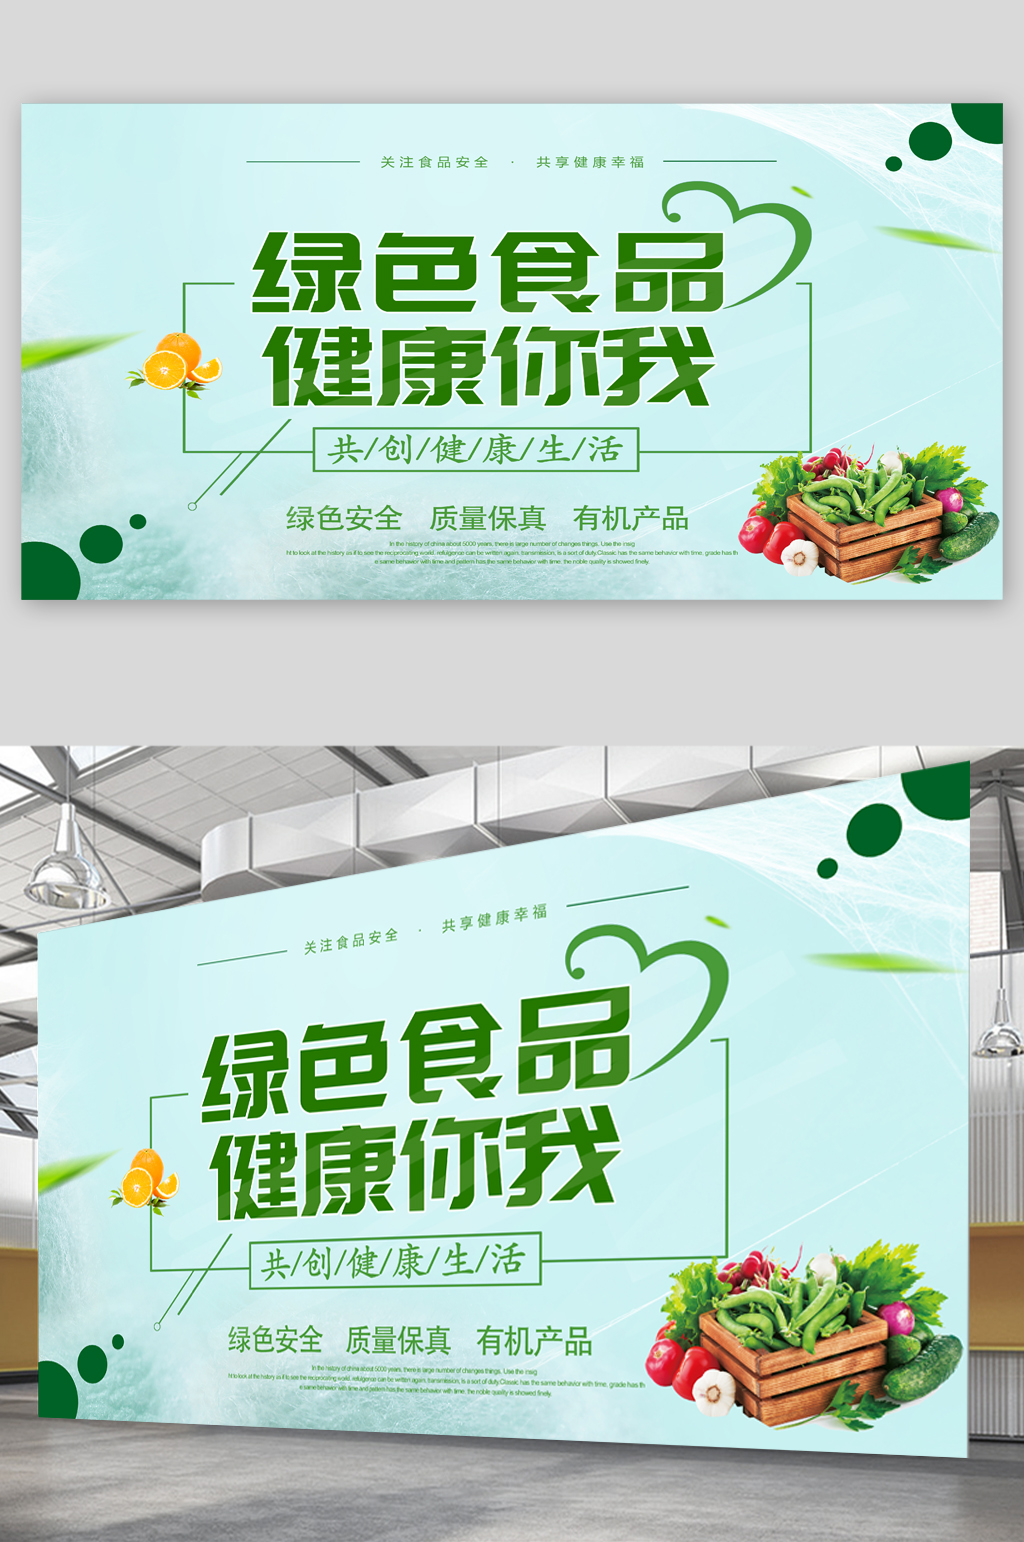 绿色食品广告语图片